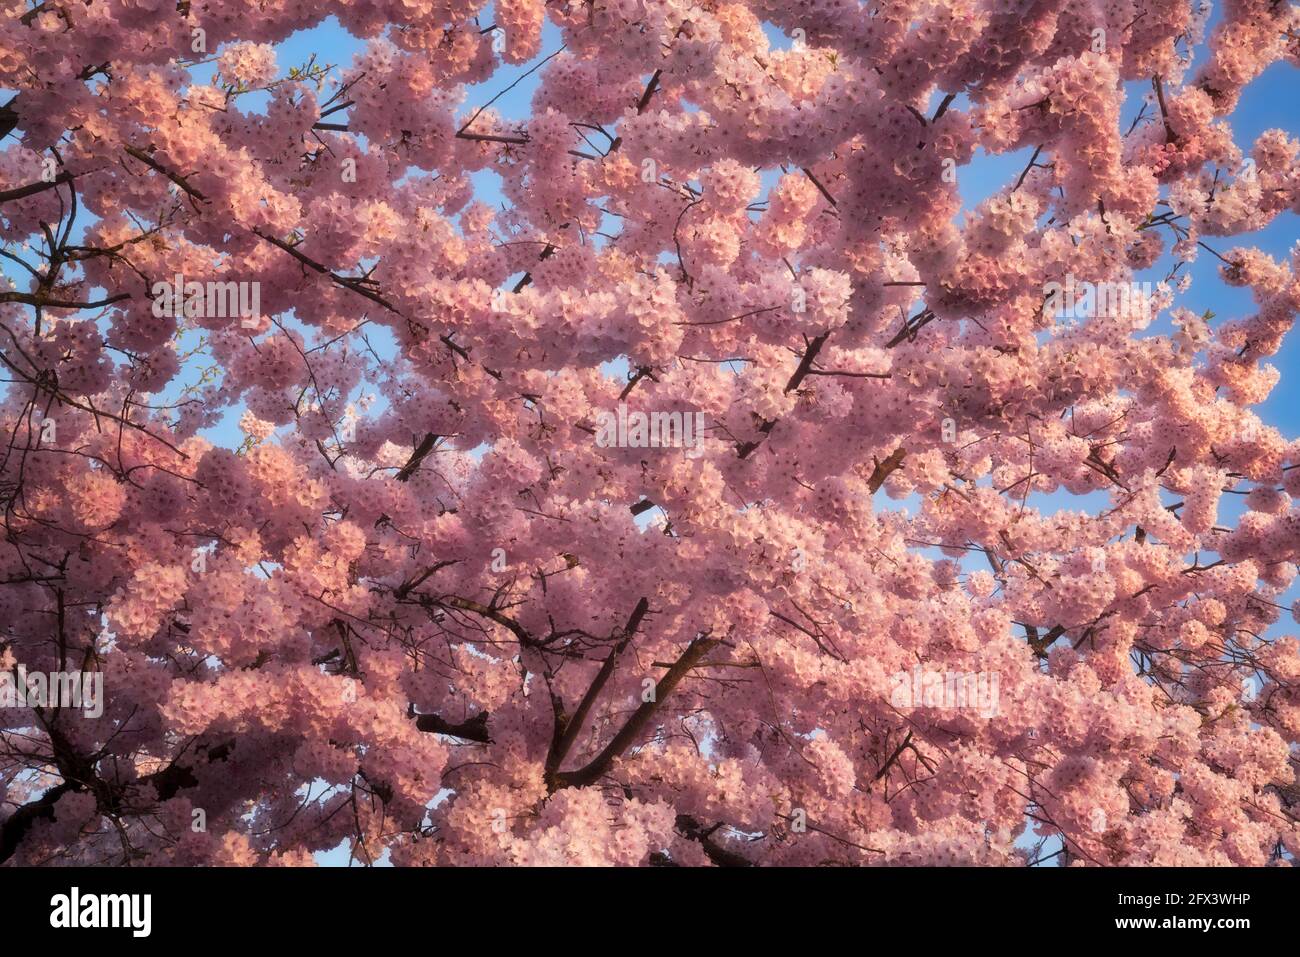 Diese frühlingshaft blühenden japanischen Kirschbäume, die in vielen Stadtvierteln im Multnomah County in Oregon zu finden sind, leuchten am Abend. Stockfoto